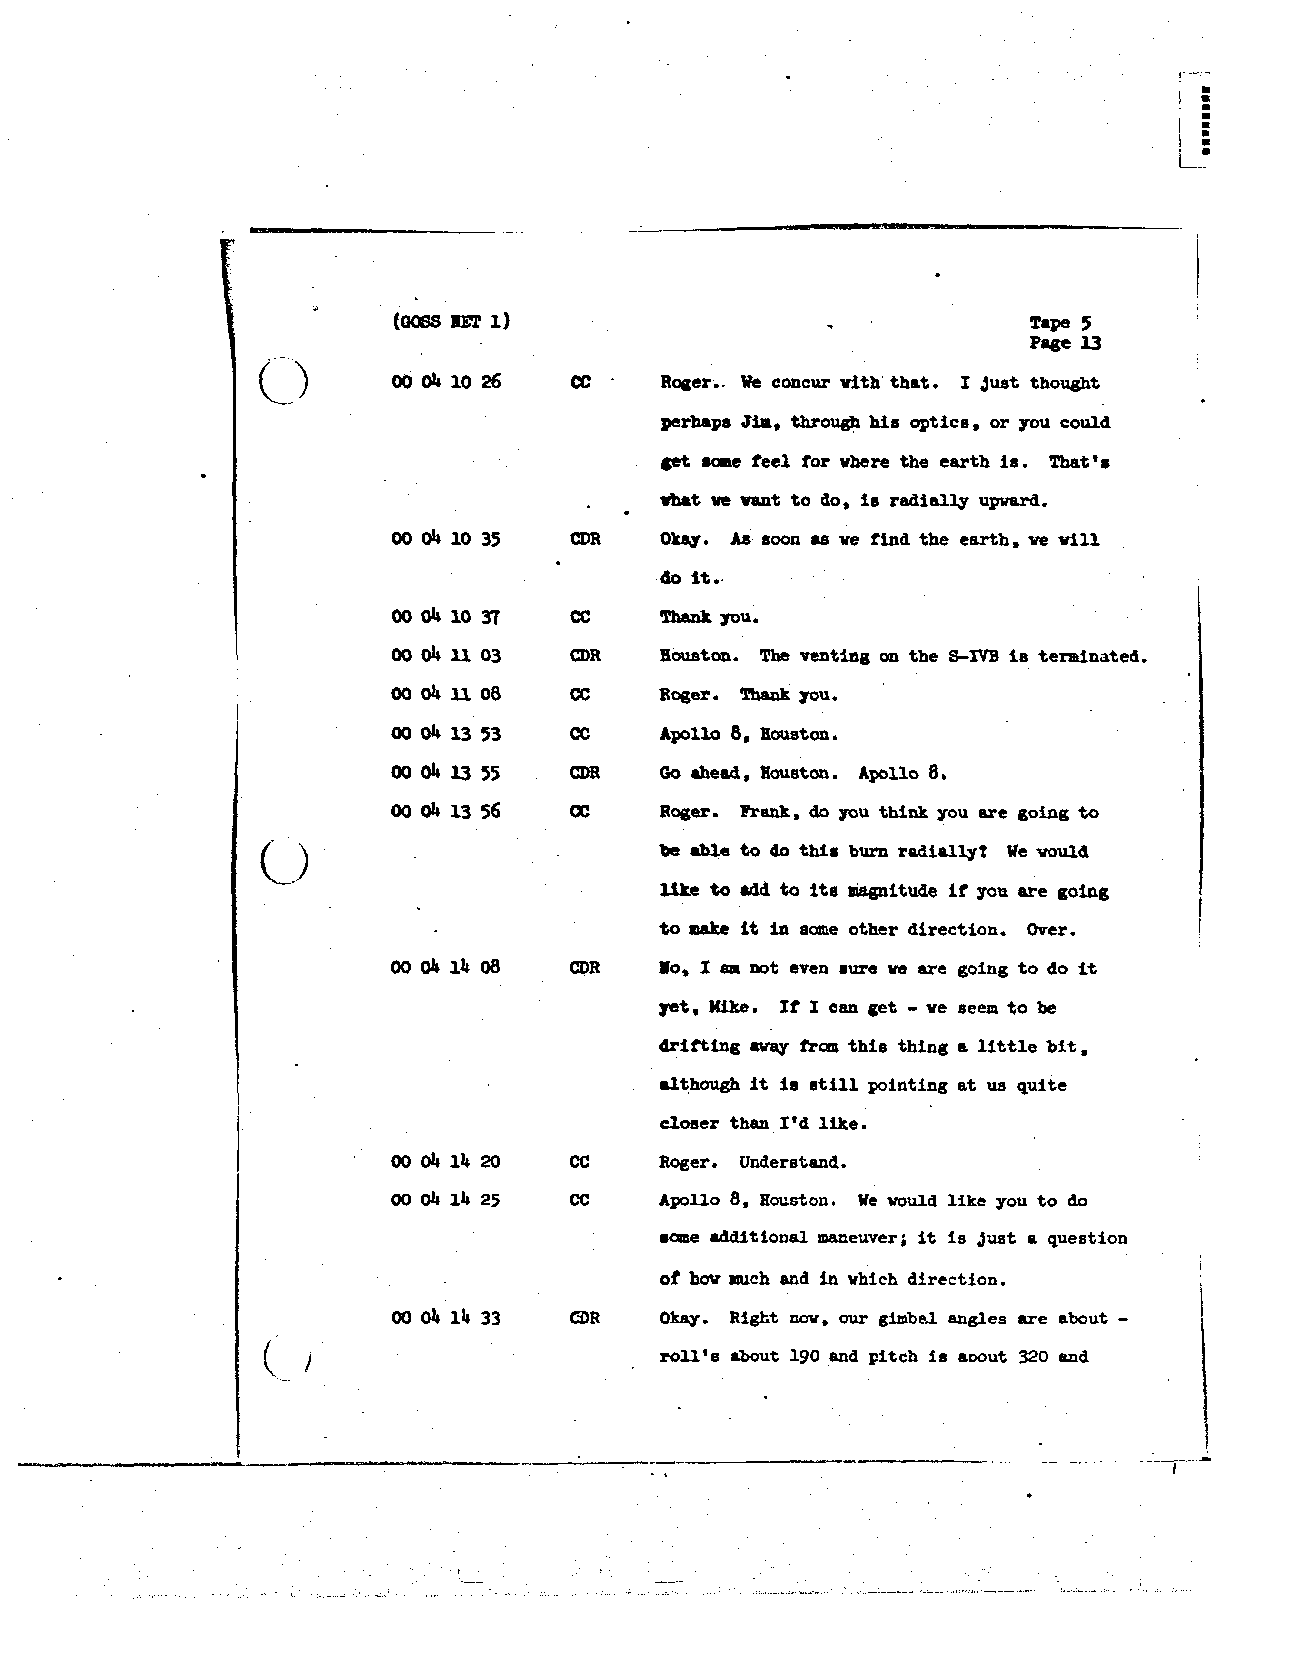 Page 39 of Apollo 8’s original transcript